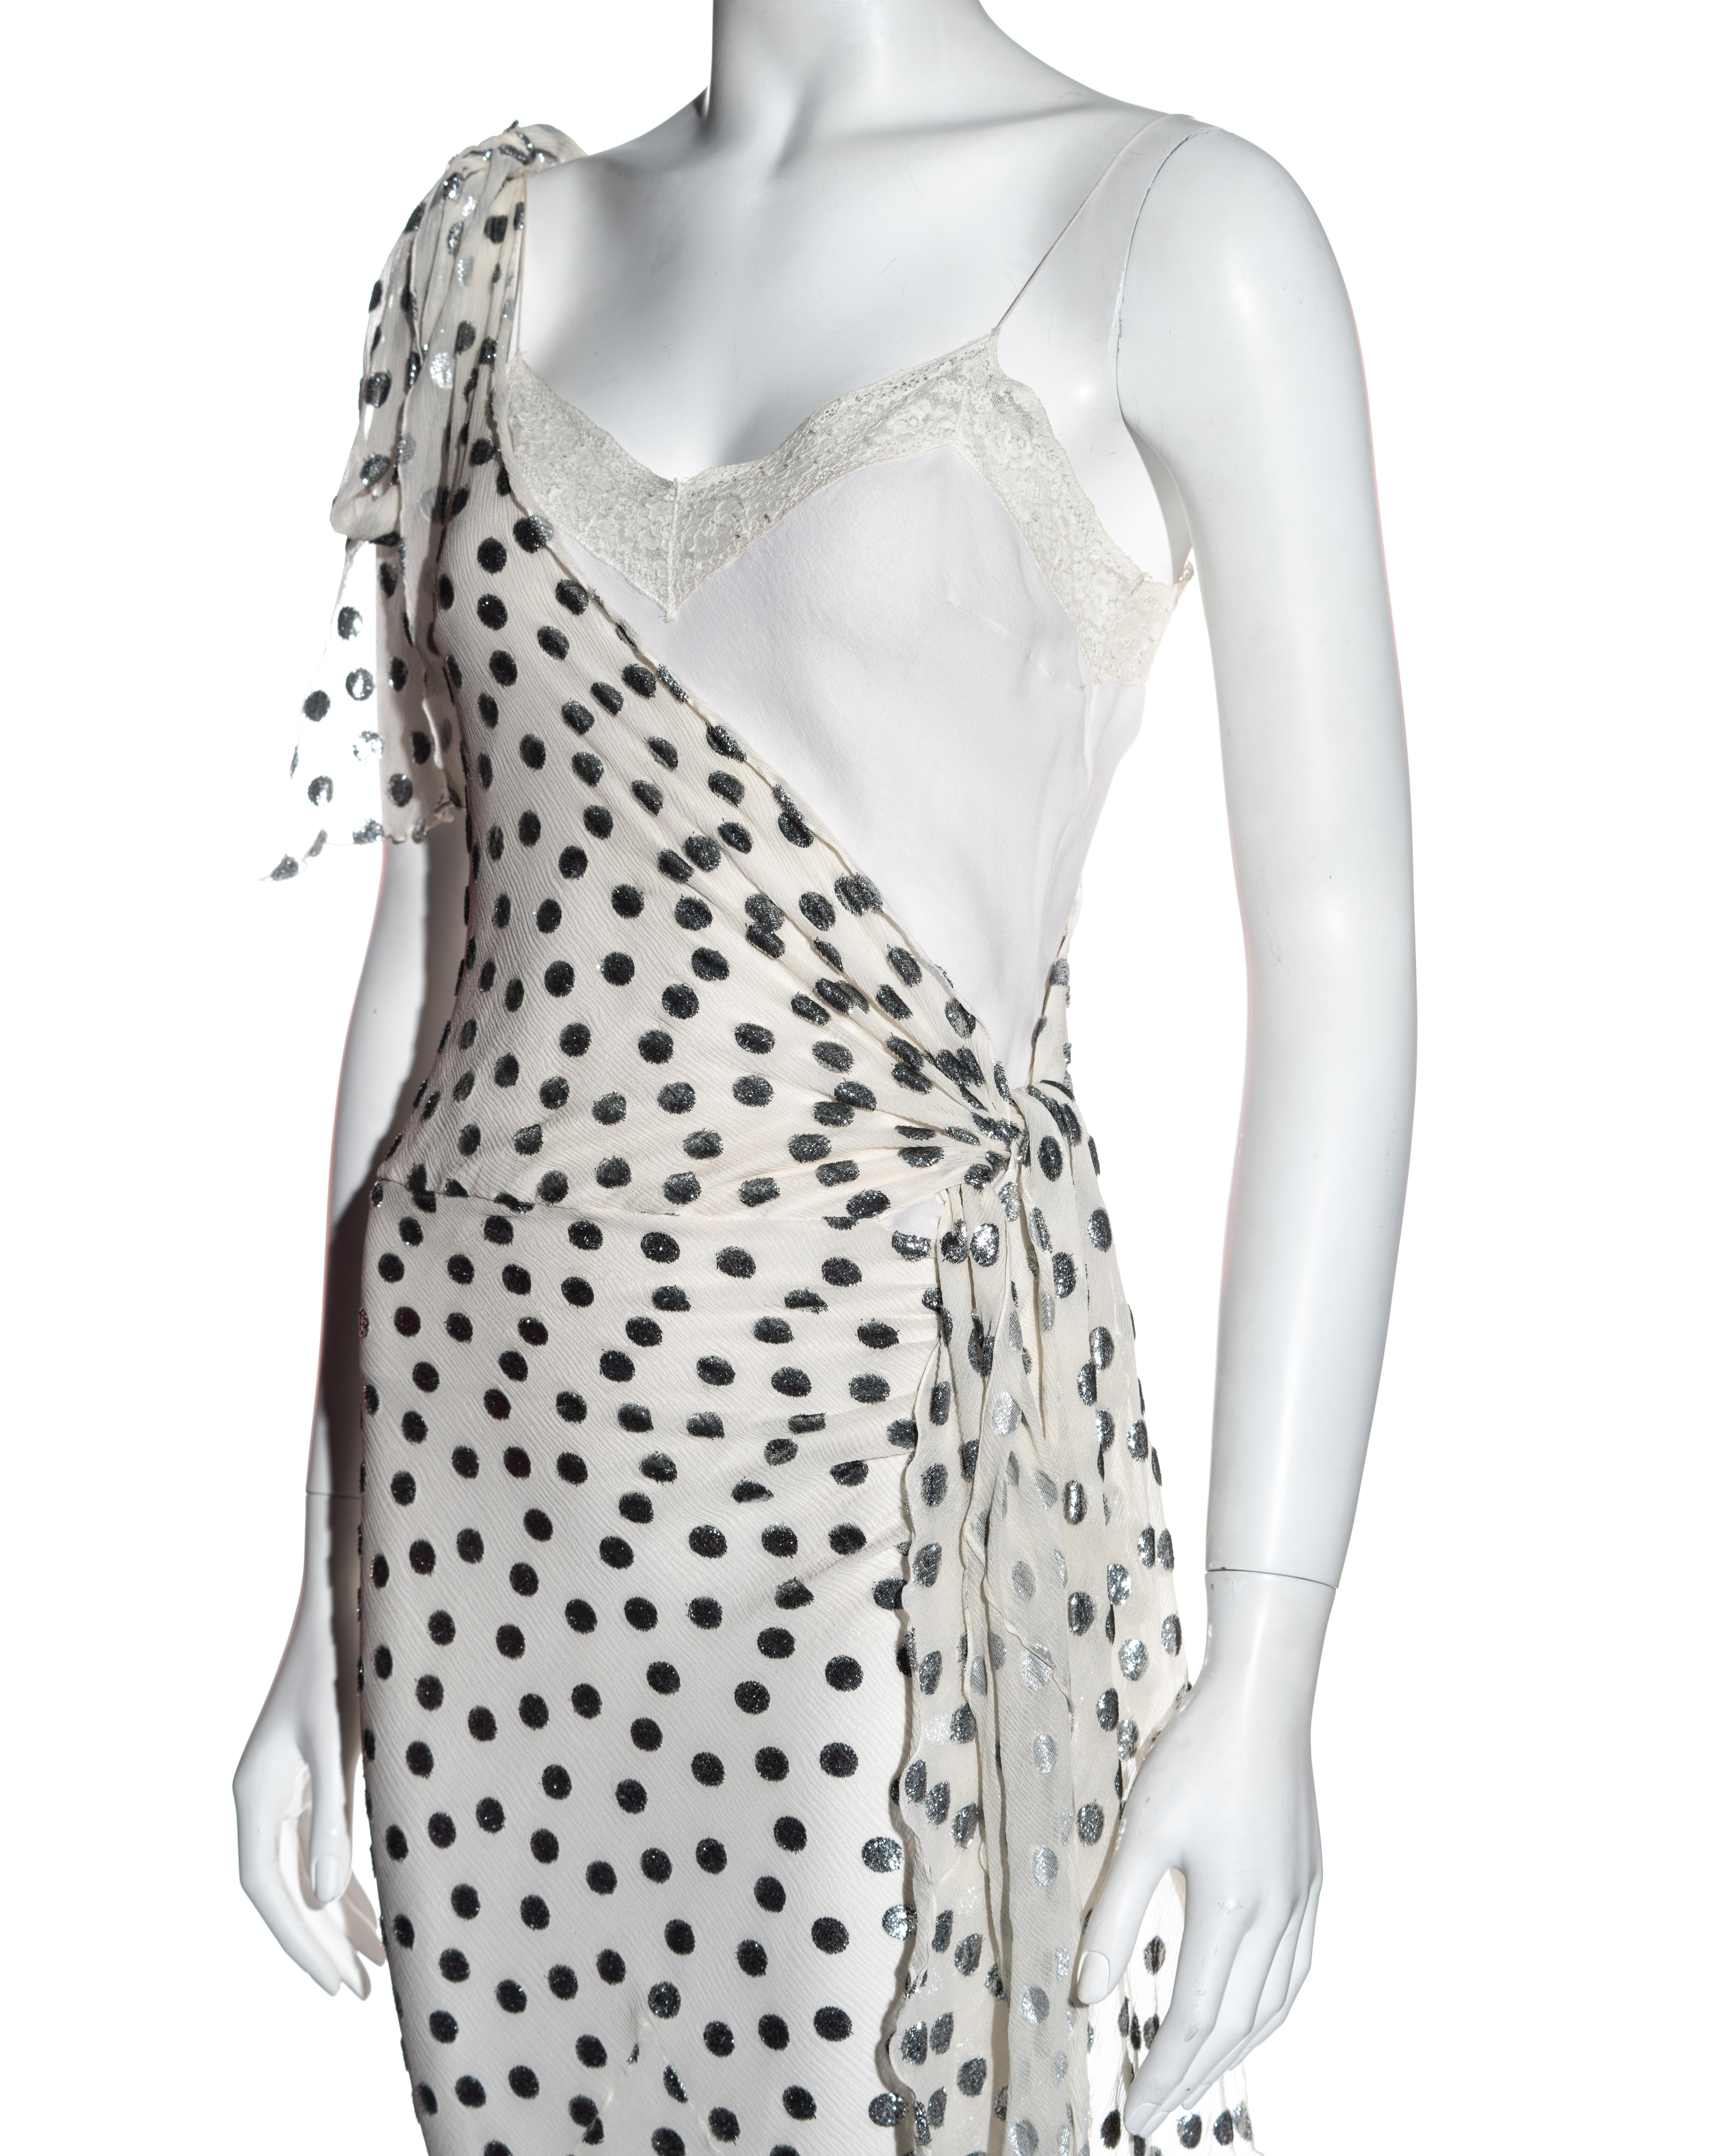 Gray John Galliano white and silver polkadot silk devoré bias cut dress, ss 2004